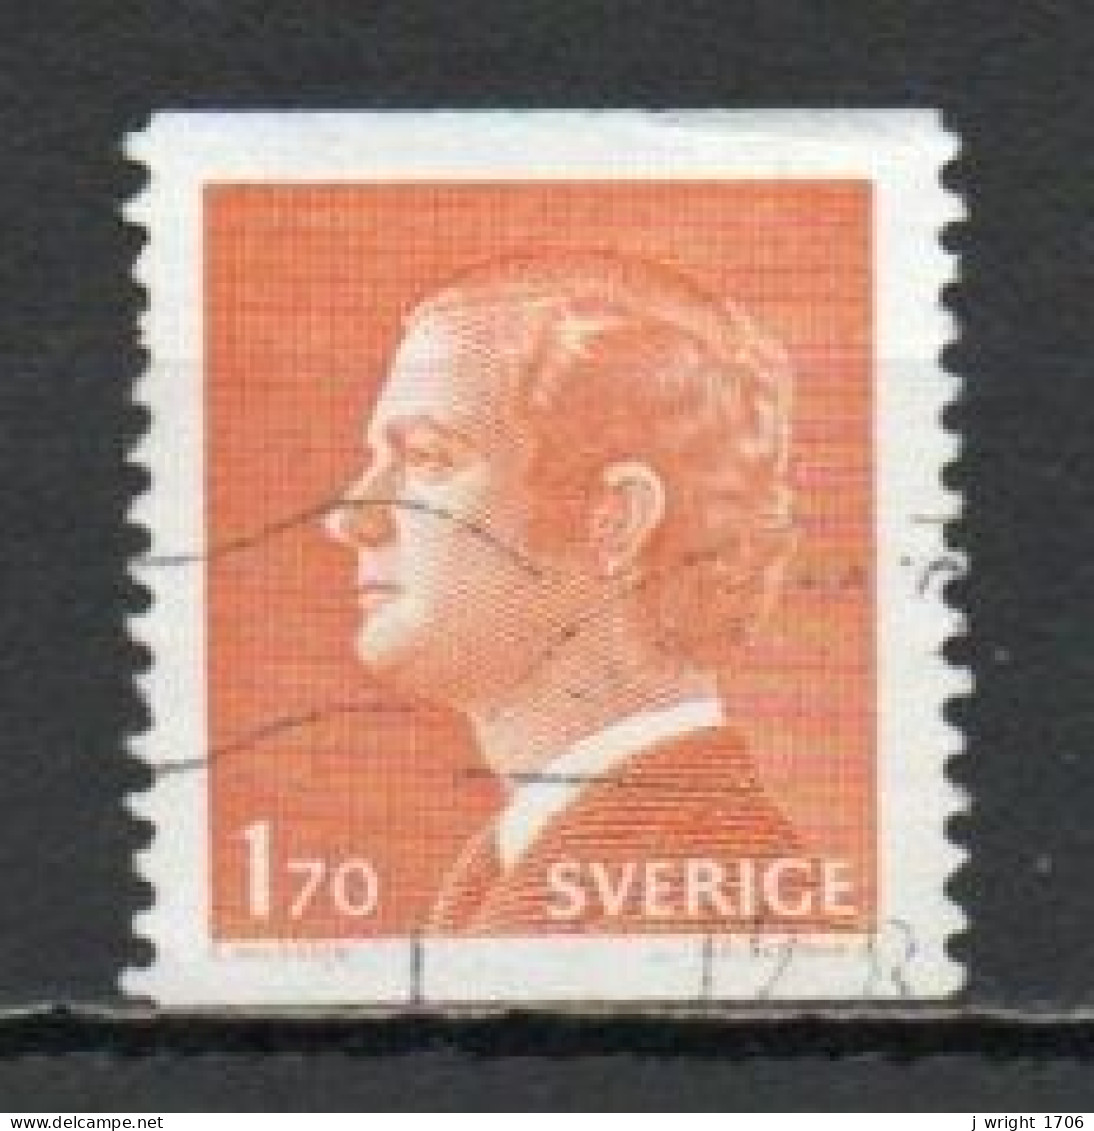 Sweden, 1978, King Carl XVI Gustaf, 1.70kr, USED - Gebraucht